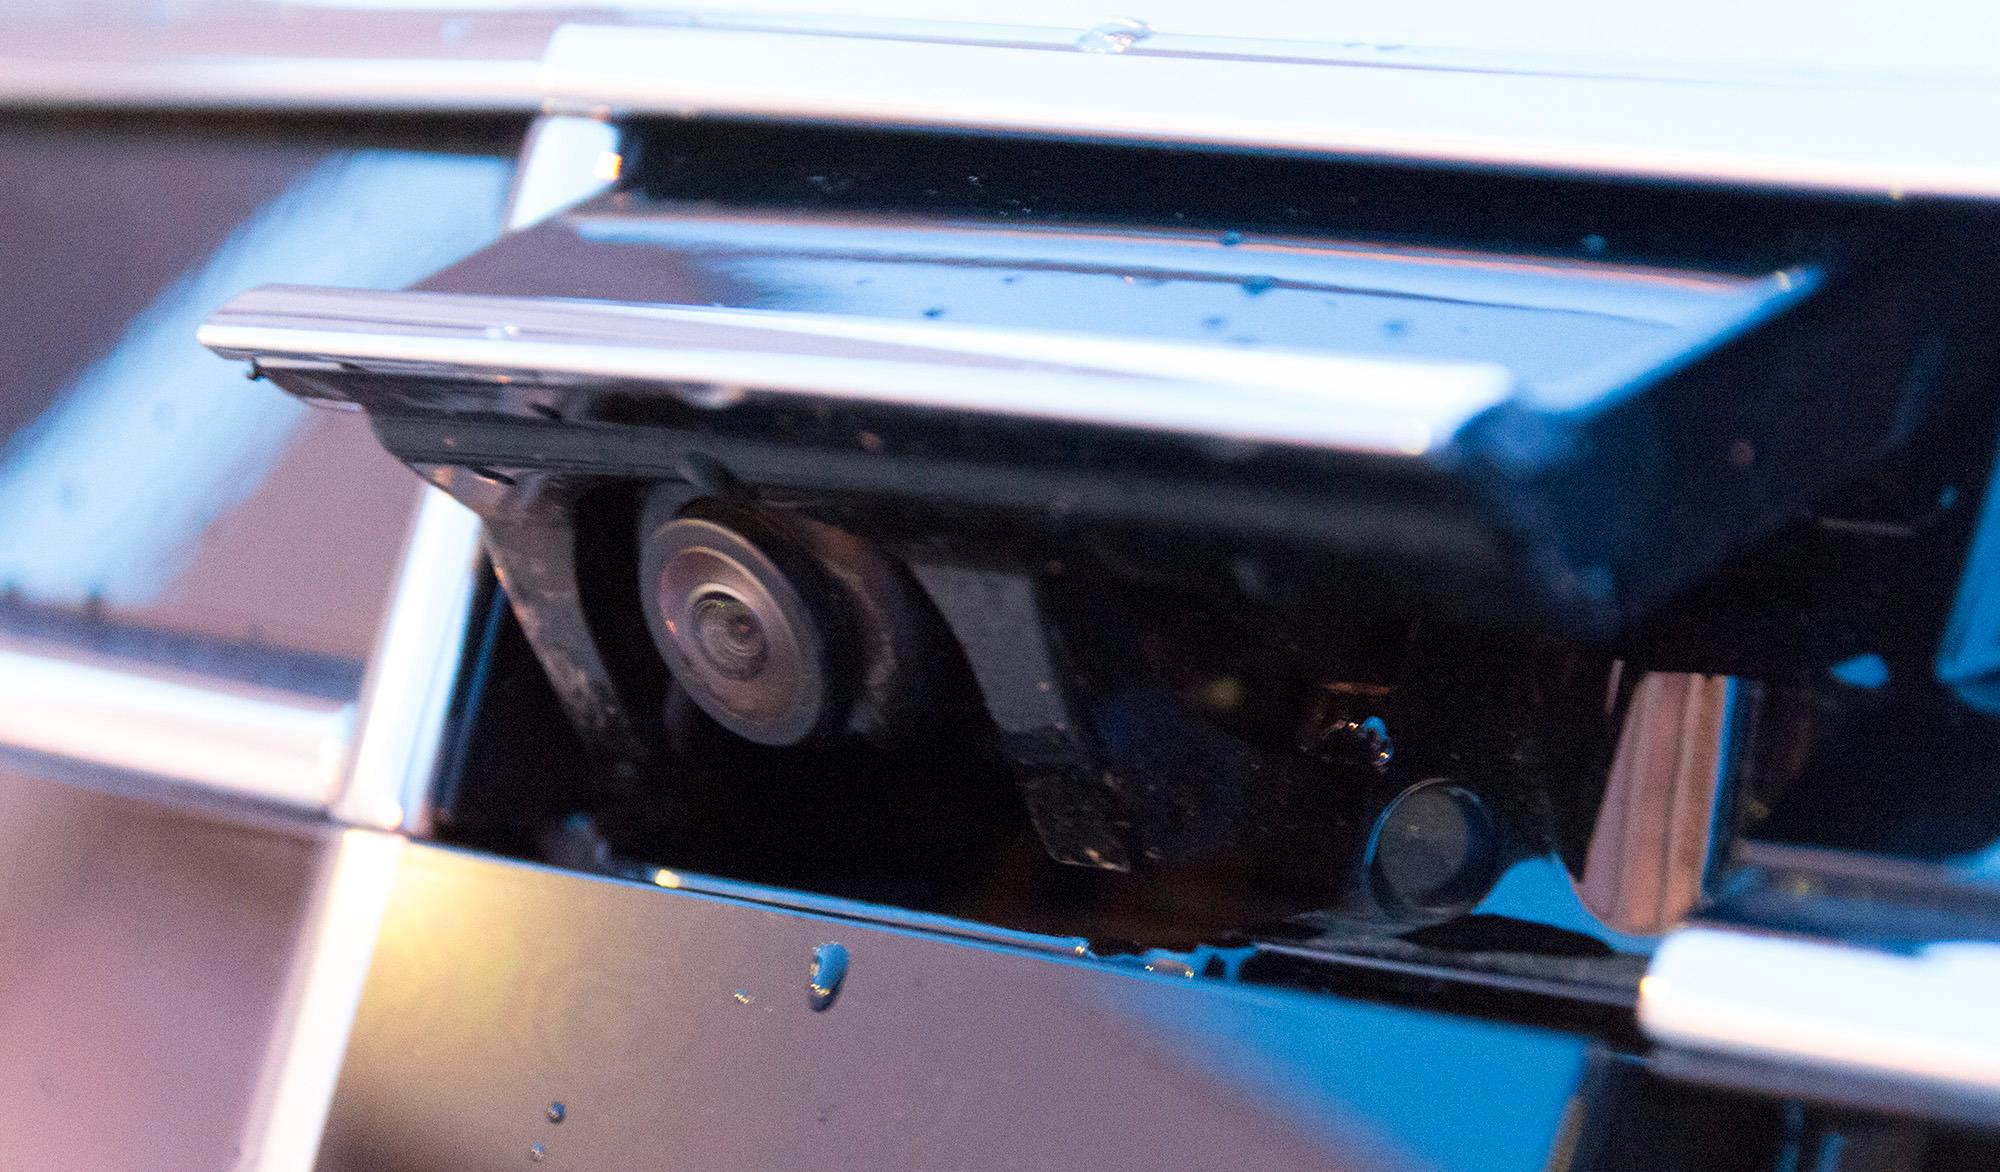 Bilen har et kamera som spretter ut av grillen når parkeringsfunksjonene aktiveres. Sammen med dette jobber et kamera under hvert sidespeil, og et ryggekamera bak. Dermed kan bilen vise deg parkeringen i et datagenerert fugleperspektiv. Foto: Kristoffer Møllevik, Tek.no